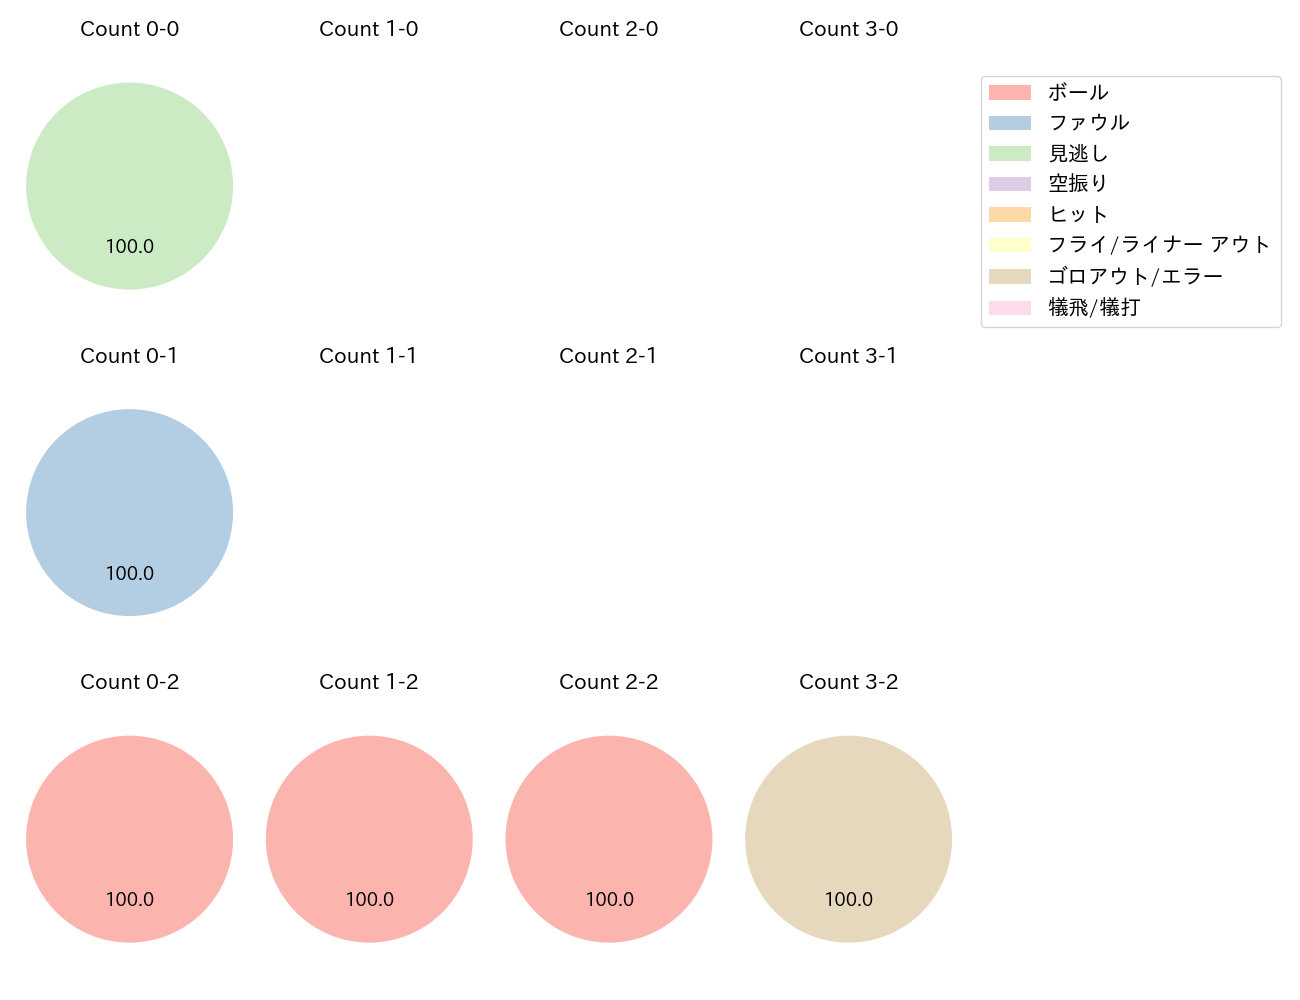 明石 健志の球数分布(2022年オープン戦)